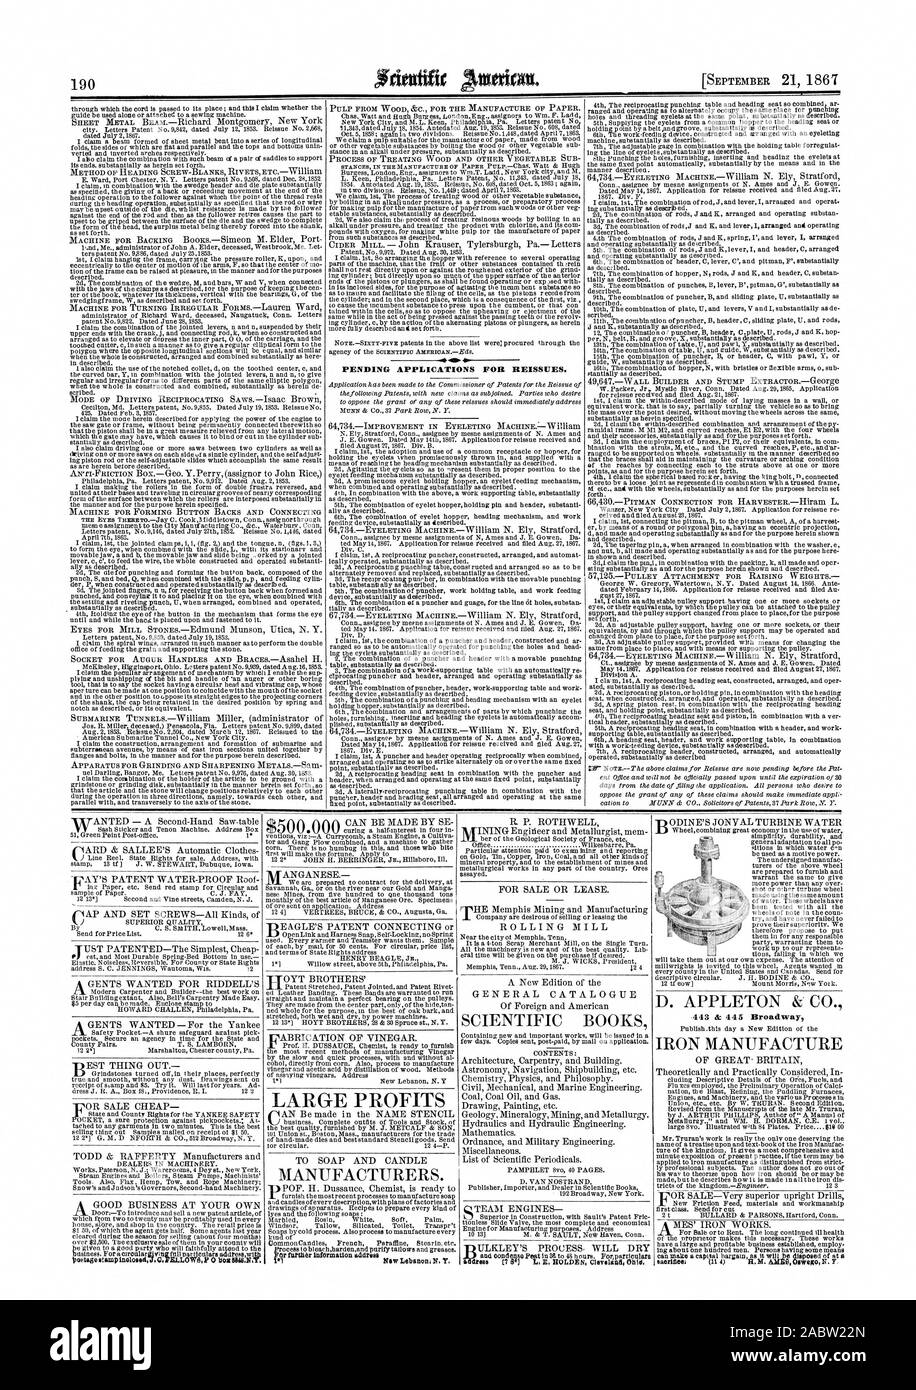 Ausstehende Anträge für NEUAUSSTELLUNGEN. Hersteller. Wissenschaftliche BÜCHER D. APPLETON & CO EISEN HERSTELLEN, Scientific American, 1867-09-21 Stockfoto